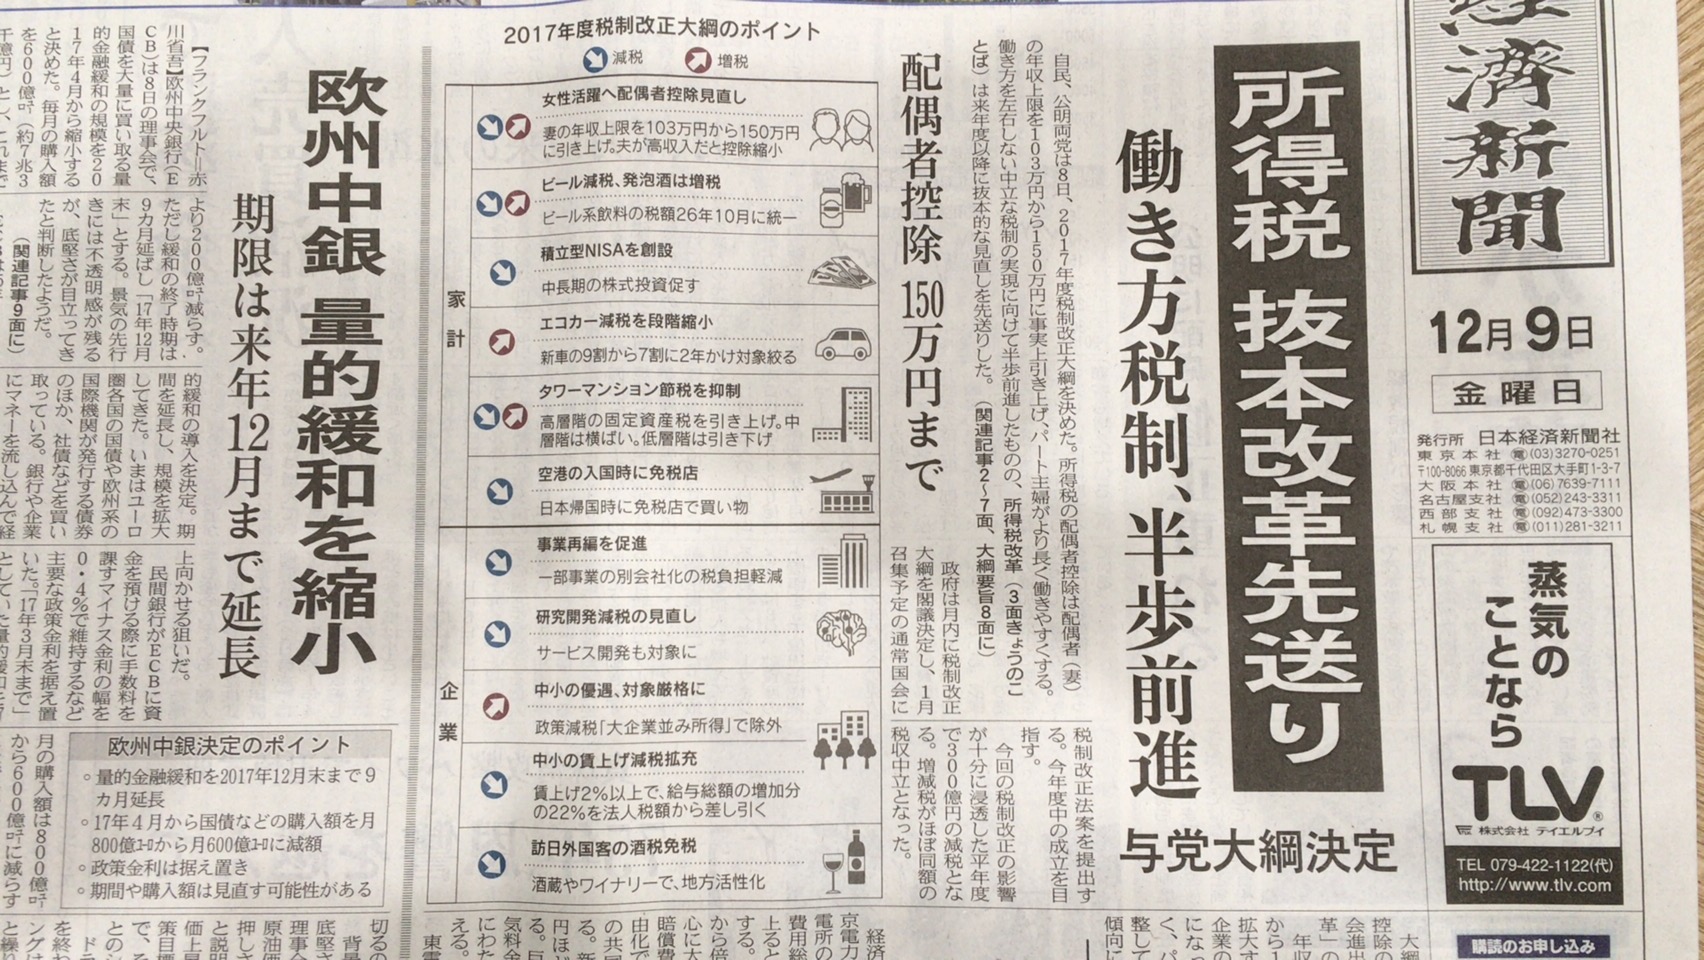 日経新聞より2017年度税制改正大綱